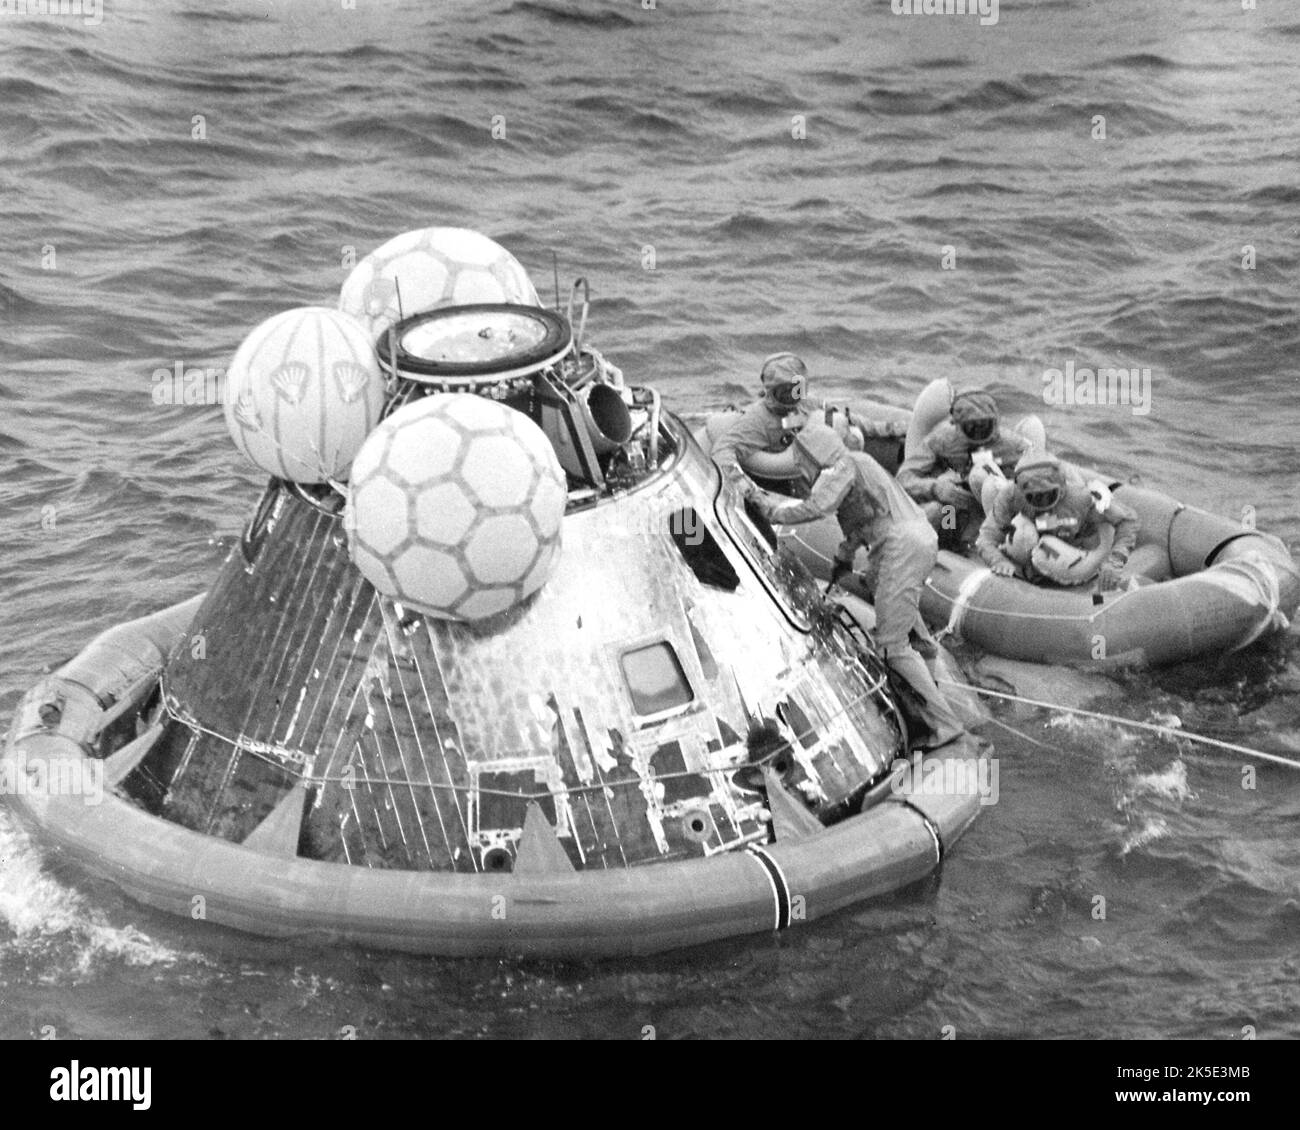 Le 24 juillet 1969, l'équipage de l'Apollo 11 est revenu sur Terre avec succès après sa mission de 8 jours à la surface lunaire. Les astronautes Neil Armstrong, Edwin 'Buzz' Aldrin et Michael Collins se sont éclatés dans l'océan Pacifique, à 13 kilomètres du navire de récupération USS Hornet. Porter des vêtements d'isolement biologique avant de quitter le vaisseau spatial, l'équipage est allé directement à l'installation de quarantaine mobile à bord du porte-avions, leur domicile pendant les 21 prochains jours. Avec le succès d'Apollo 11, l'objectif national d'atterrissage des hommes sur la Lune et de leur retour en toute sécurité a été atteint. NASA image / crédit: NASA Banque D'Images